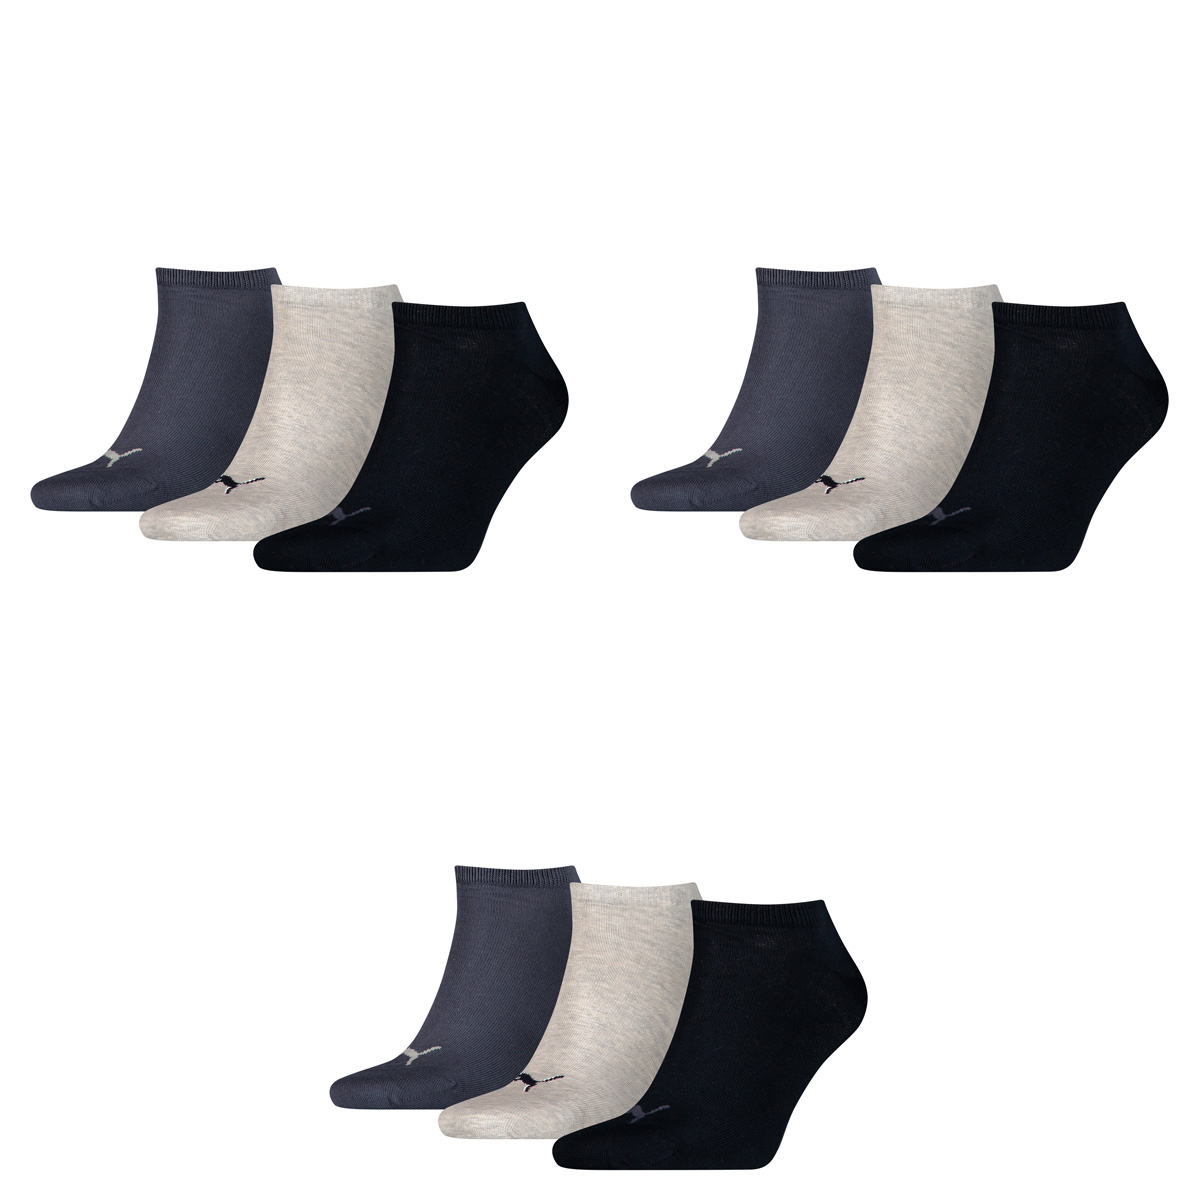 Puma 15 Paar Sneaker Invisible Socken Gr. 35-49 Unisex für Damen Herren Füßlinge, Farbe:532 - navy/grey/nightshadow b, Socken & Strümpfe:39-42